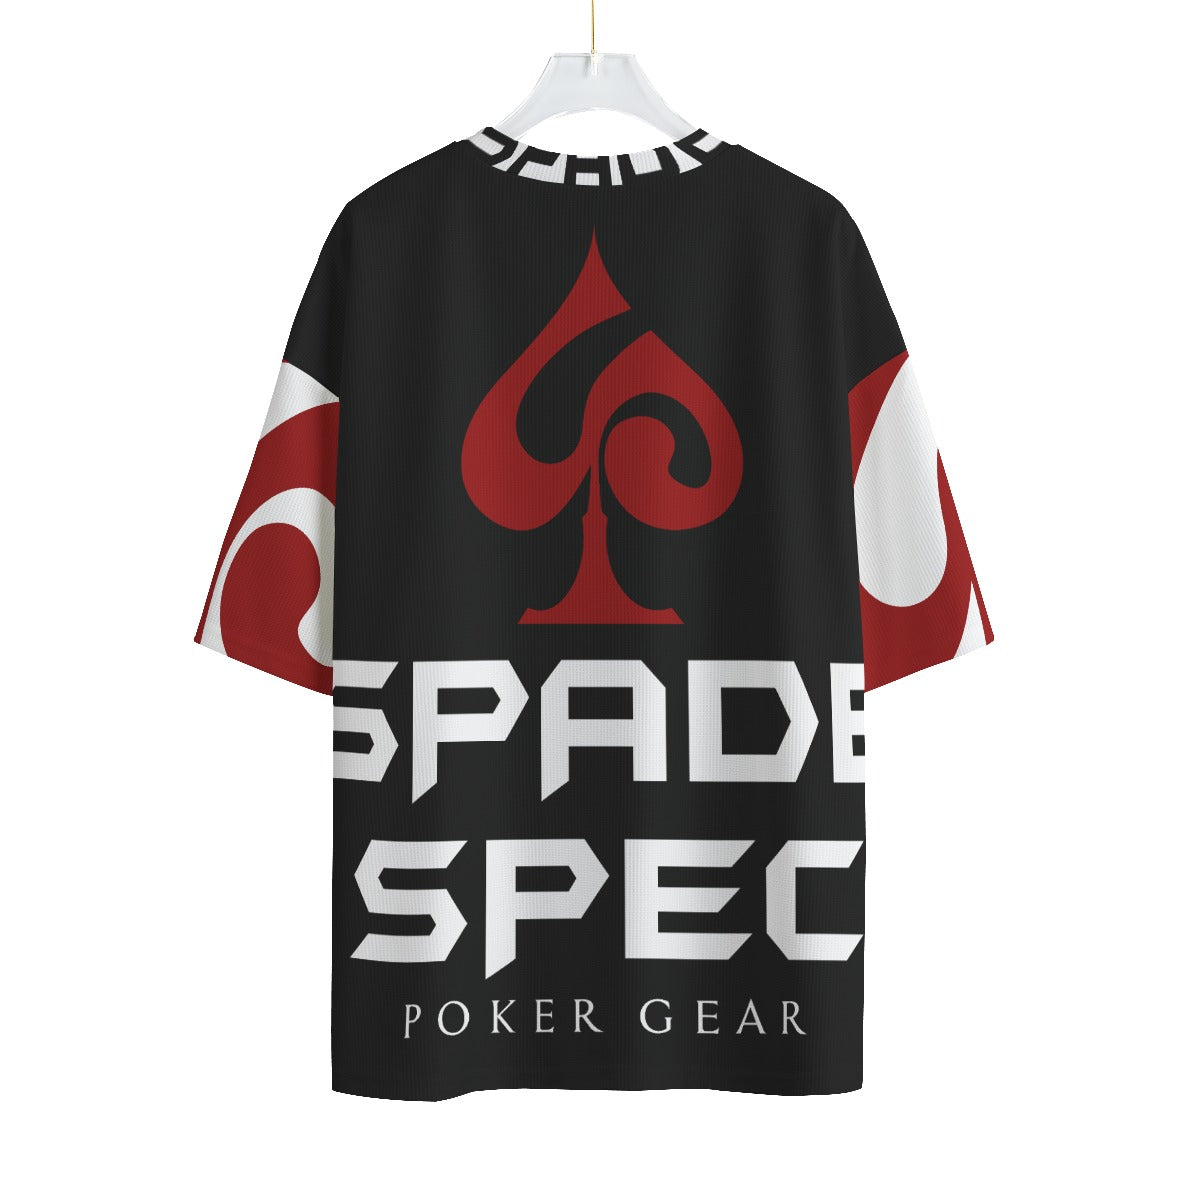 SSPG Full Screen Cross-Texture Shirt